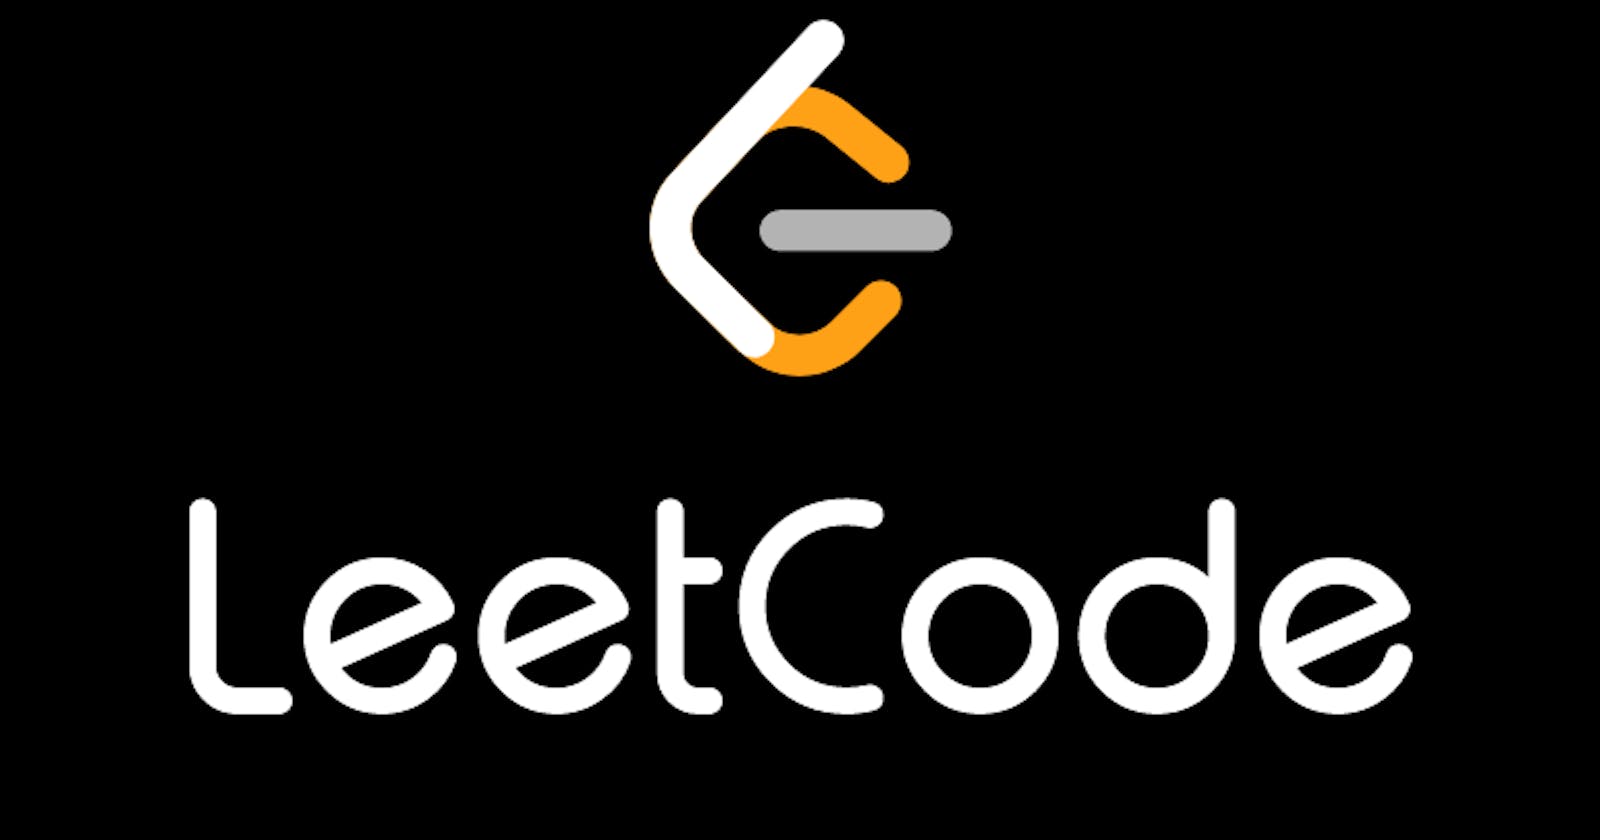 Letcode. LEETCODE. LEETCODE Python задачи. LEETCODE icon. JAVASCRIPT LEETCODE.